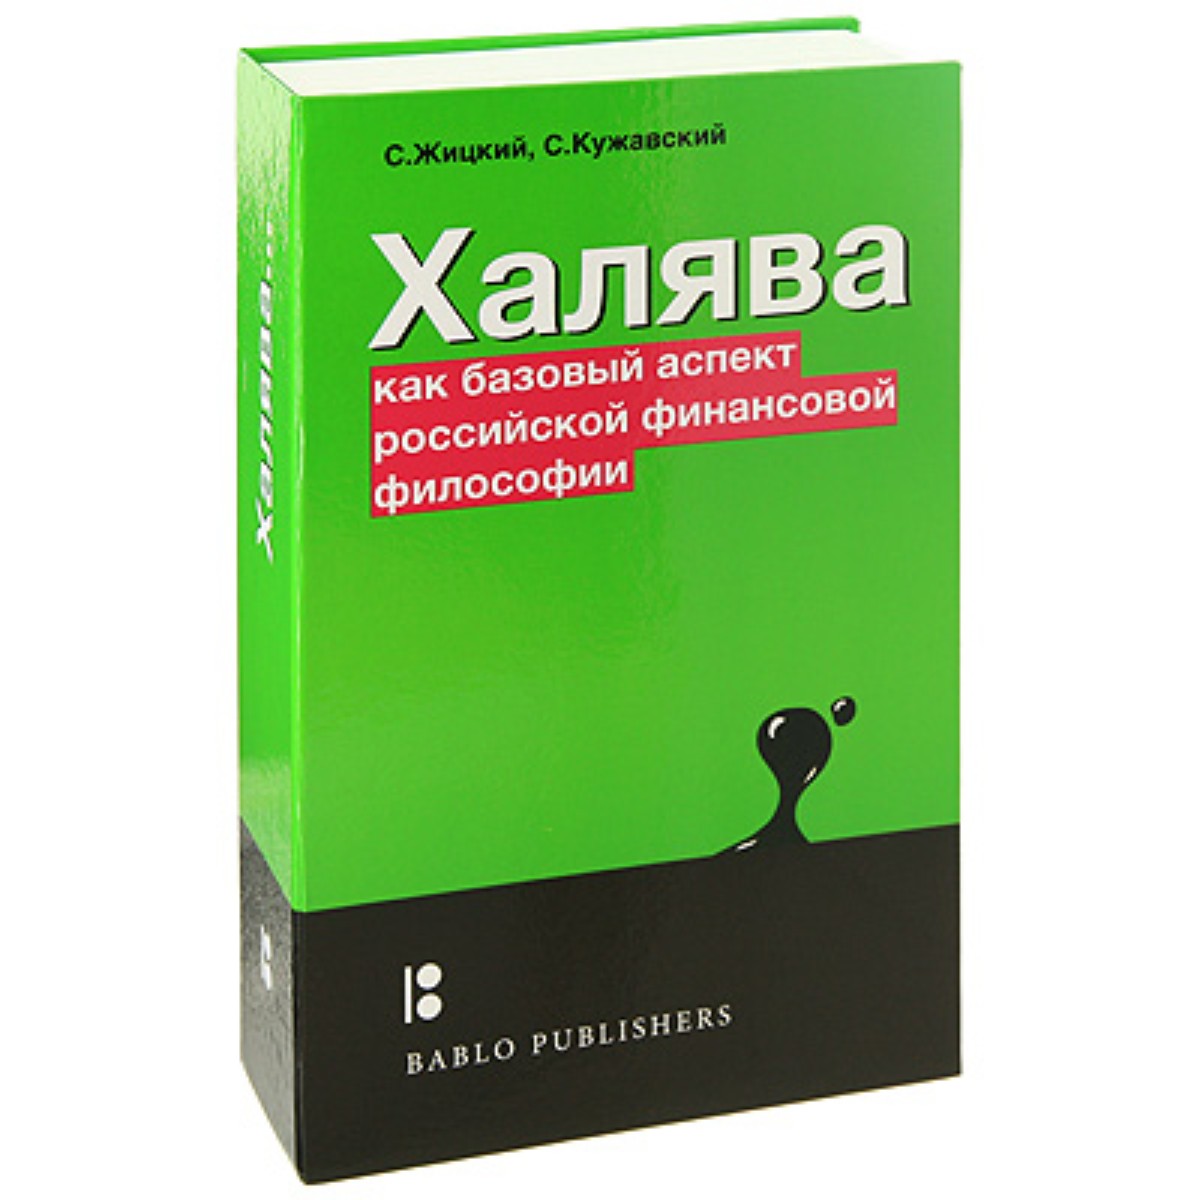 Халява книга. Книга финансы философа. Safe книга на русском. ХАЛЯВА.